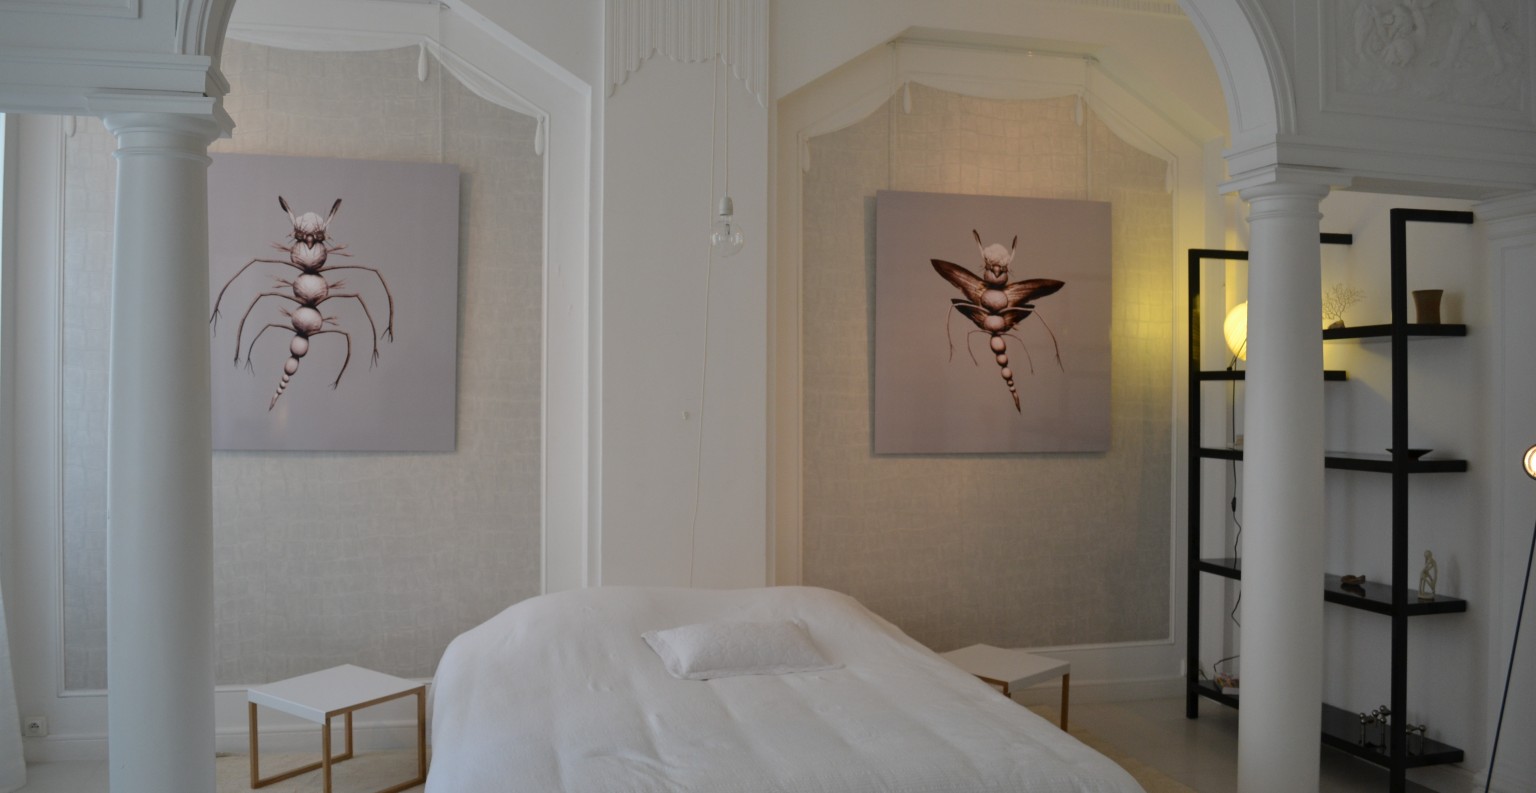 La chambre de l'appartement sert, elle aussi, de lieu d'exposition unique. ©MD